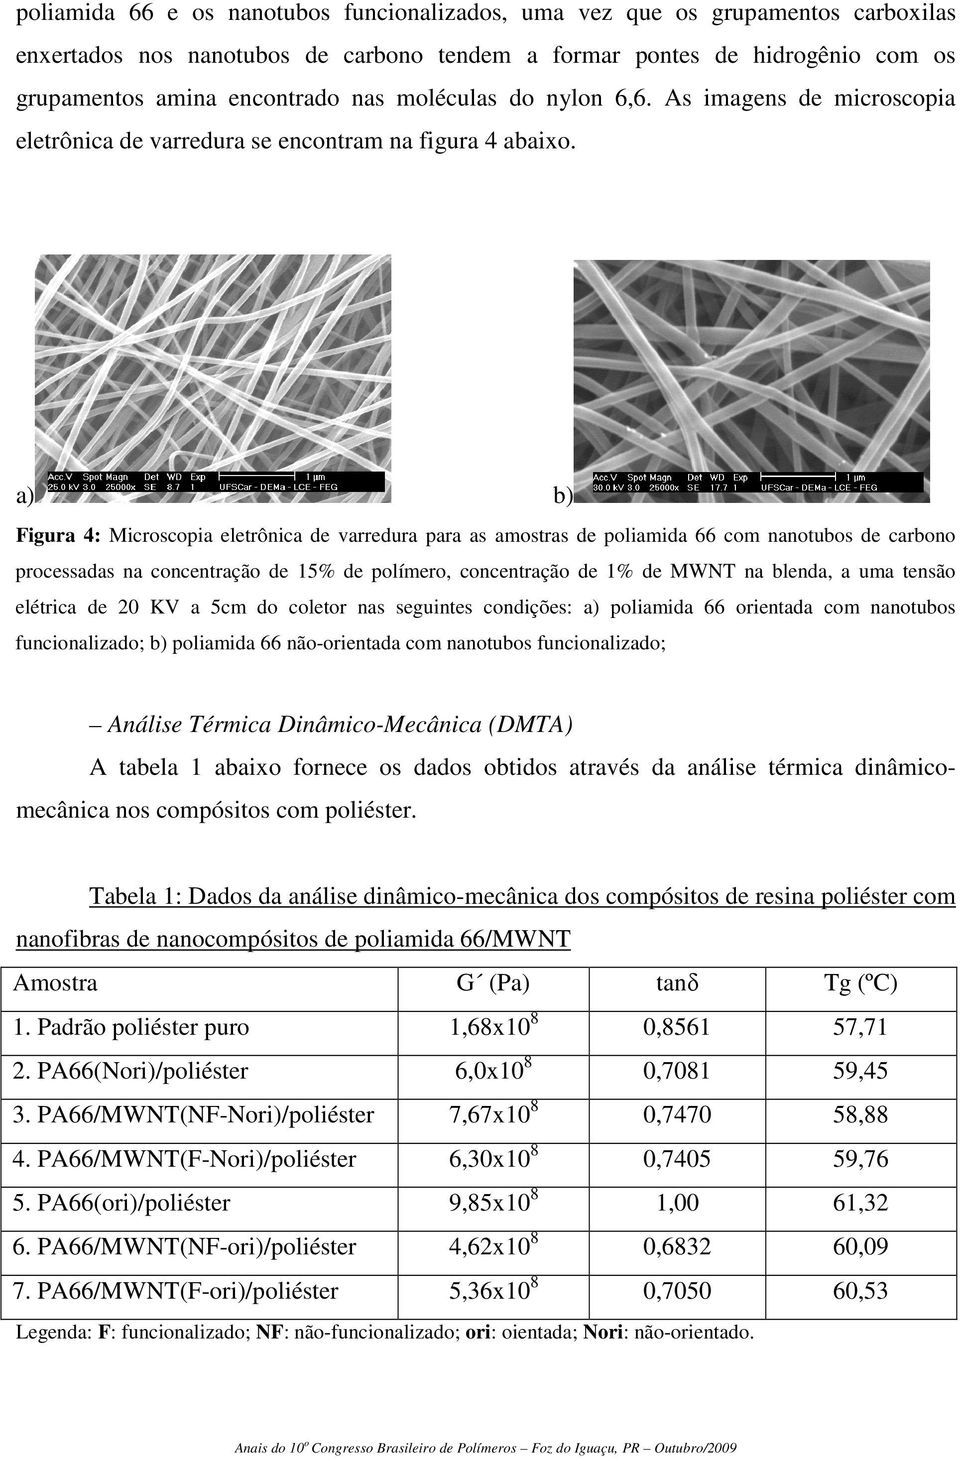 a) b) Figura 4: Microscopia eletrônica de varredura para as amostras de poliamida 66 com nanotubos de carbono processadas na concentração de 15% de polímero, concentração de 1% de MWNT na blenda, a